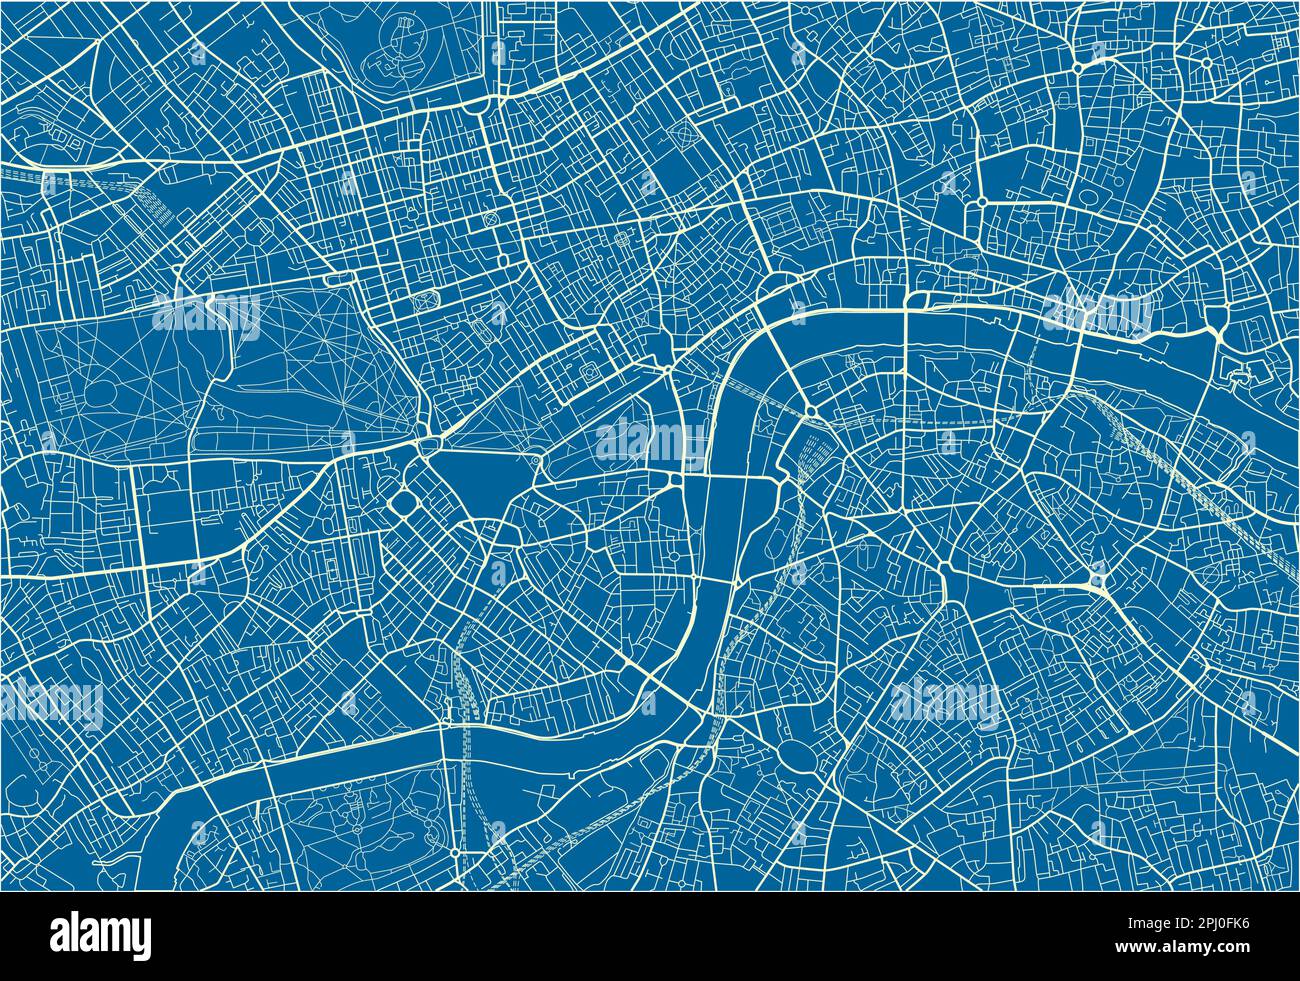 Blauer und weißer Vektorplan von London mit gut organisierten getrennten Schichten. Stock Vektor